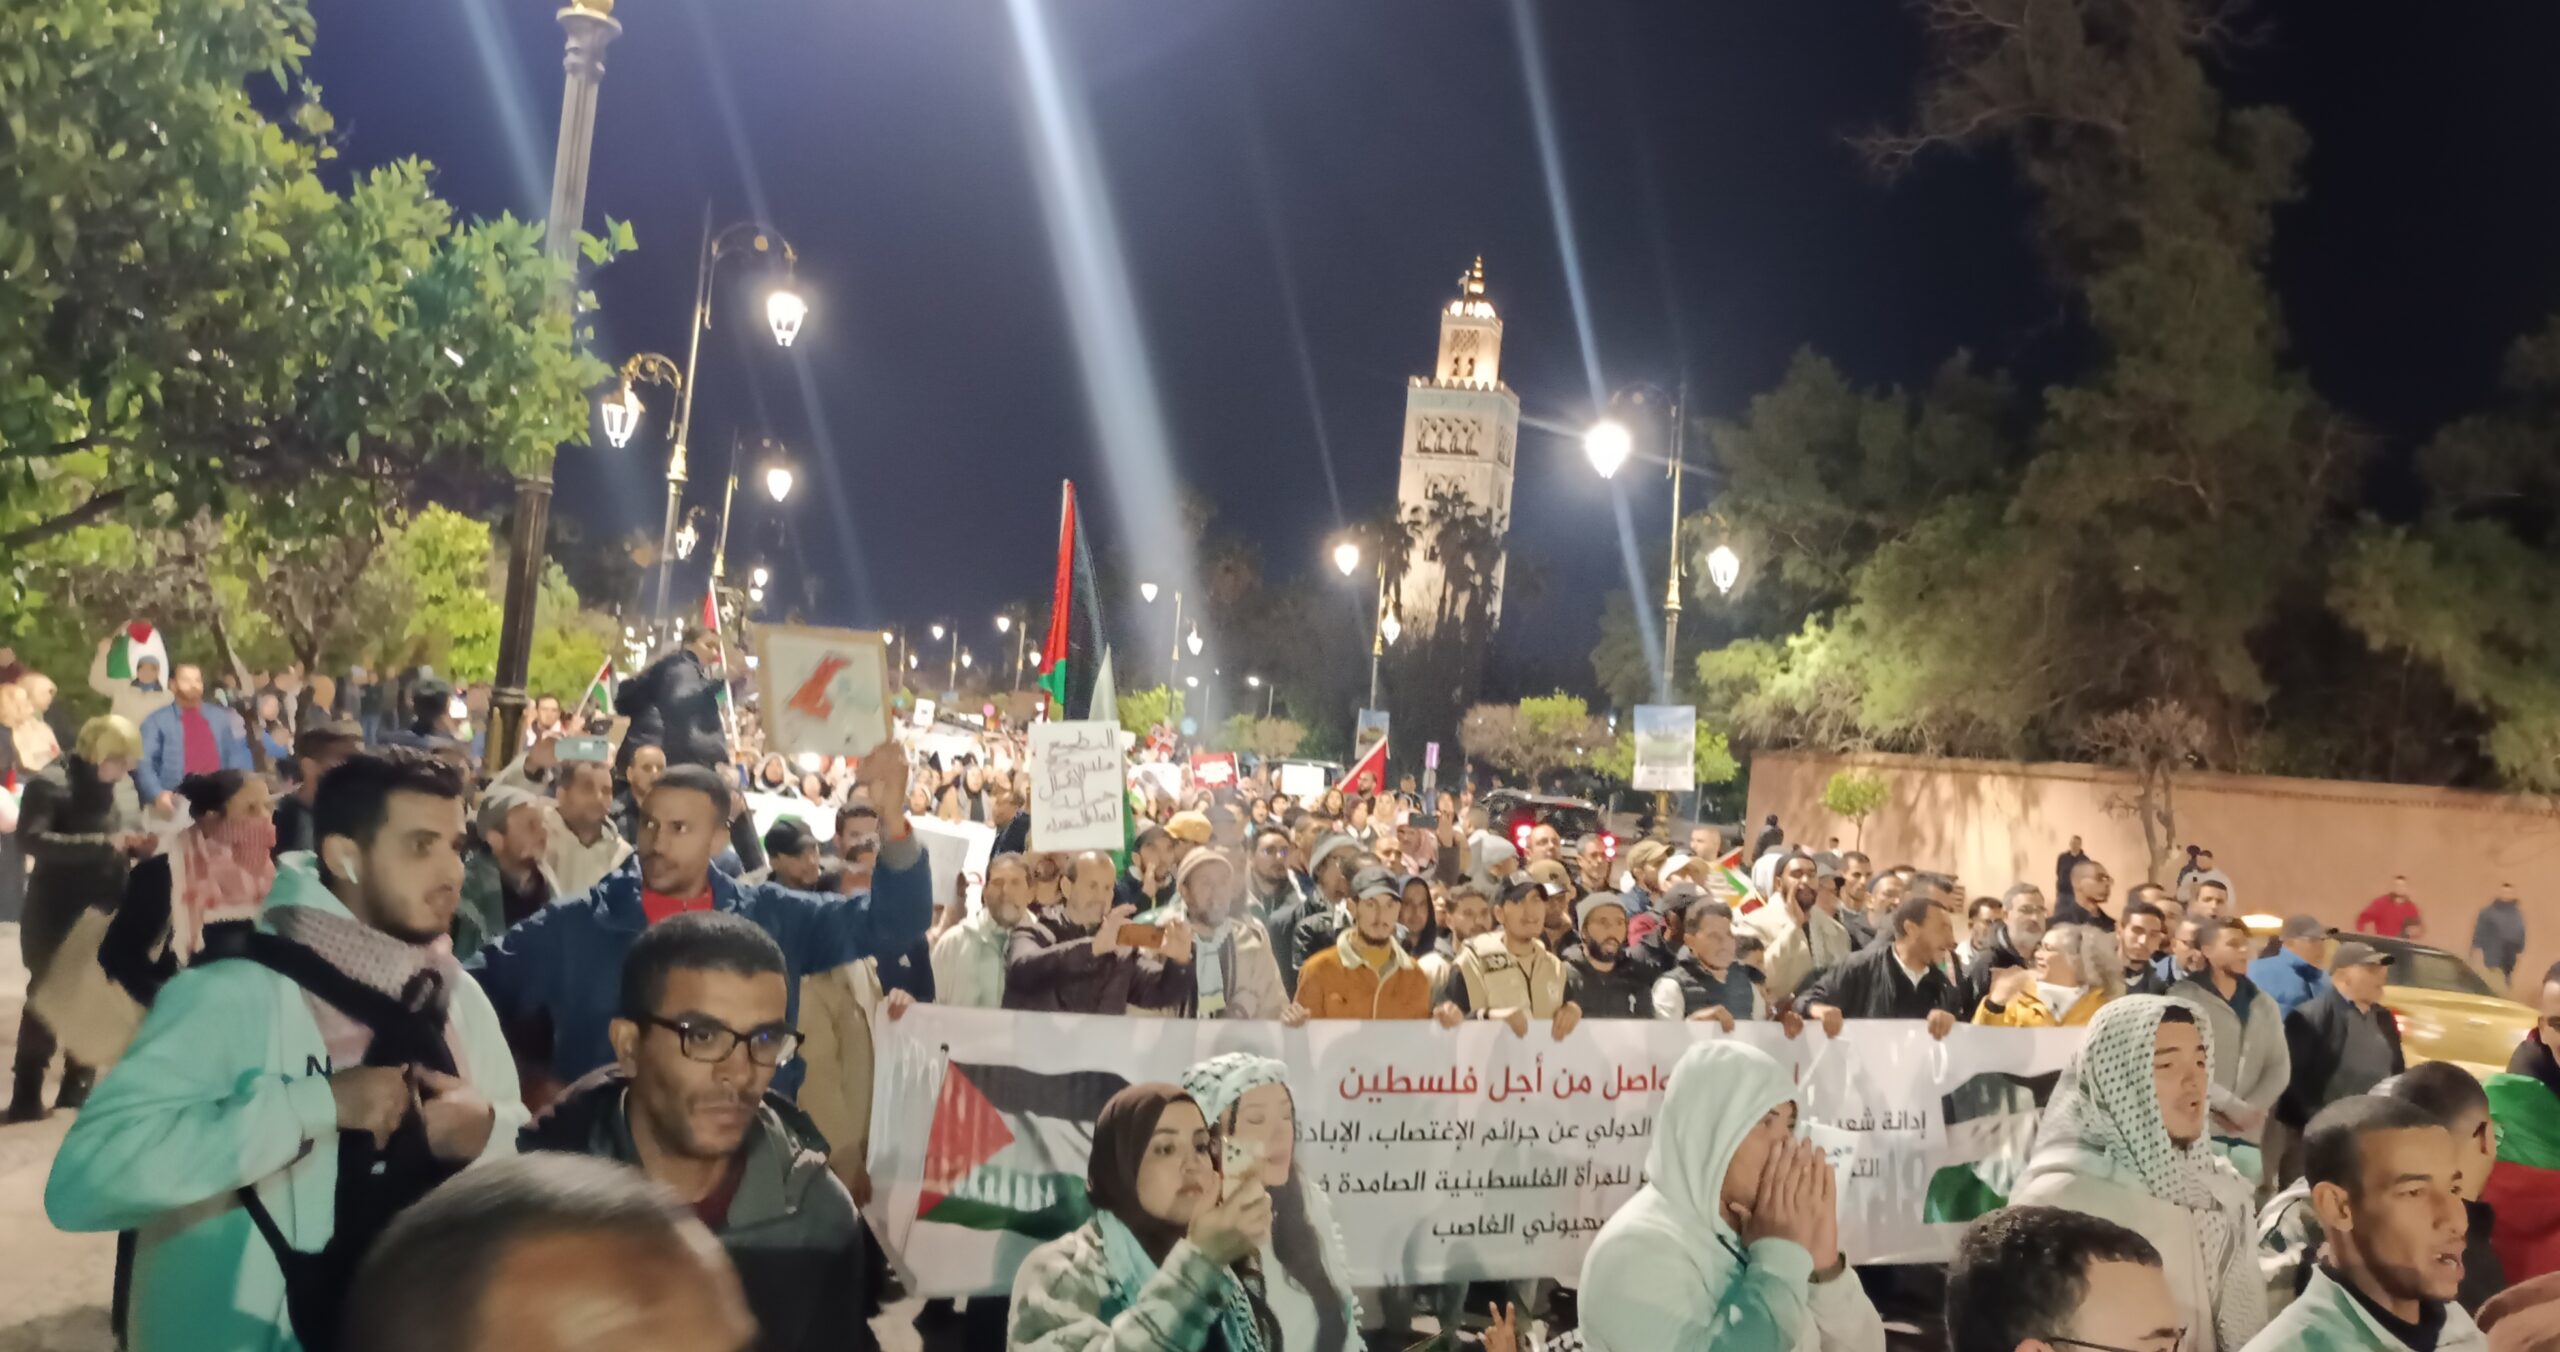 مسيرة حاشدة لإسناد أهالي فلسطين في يوم الأرض بمراكش + فيديو